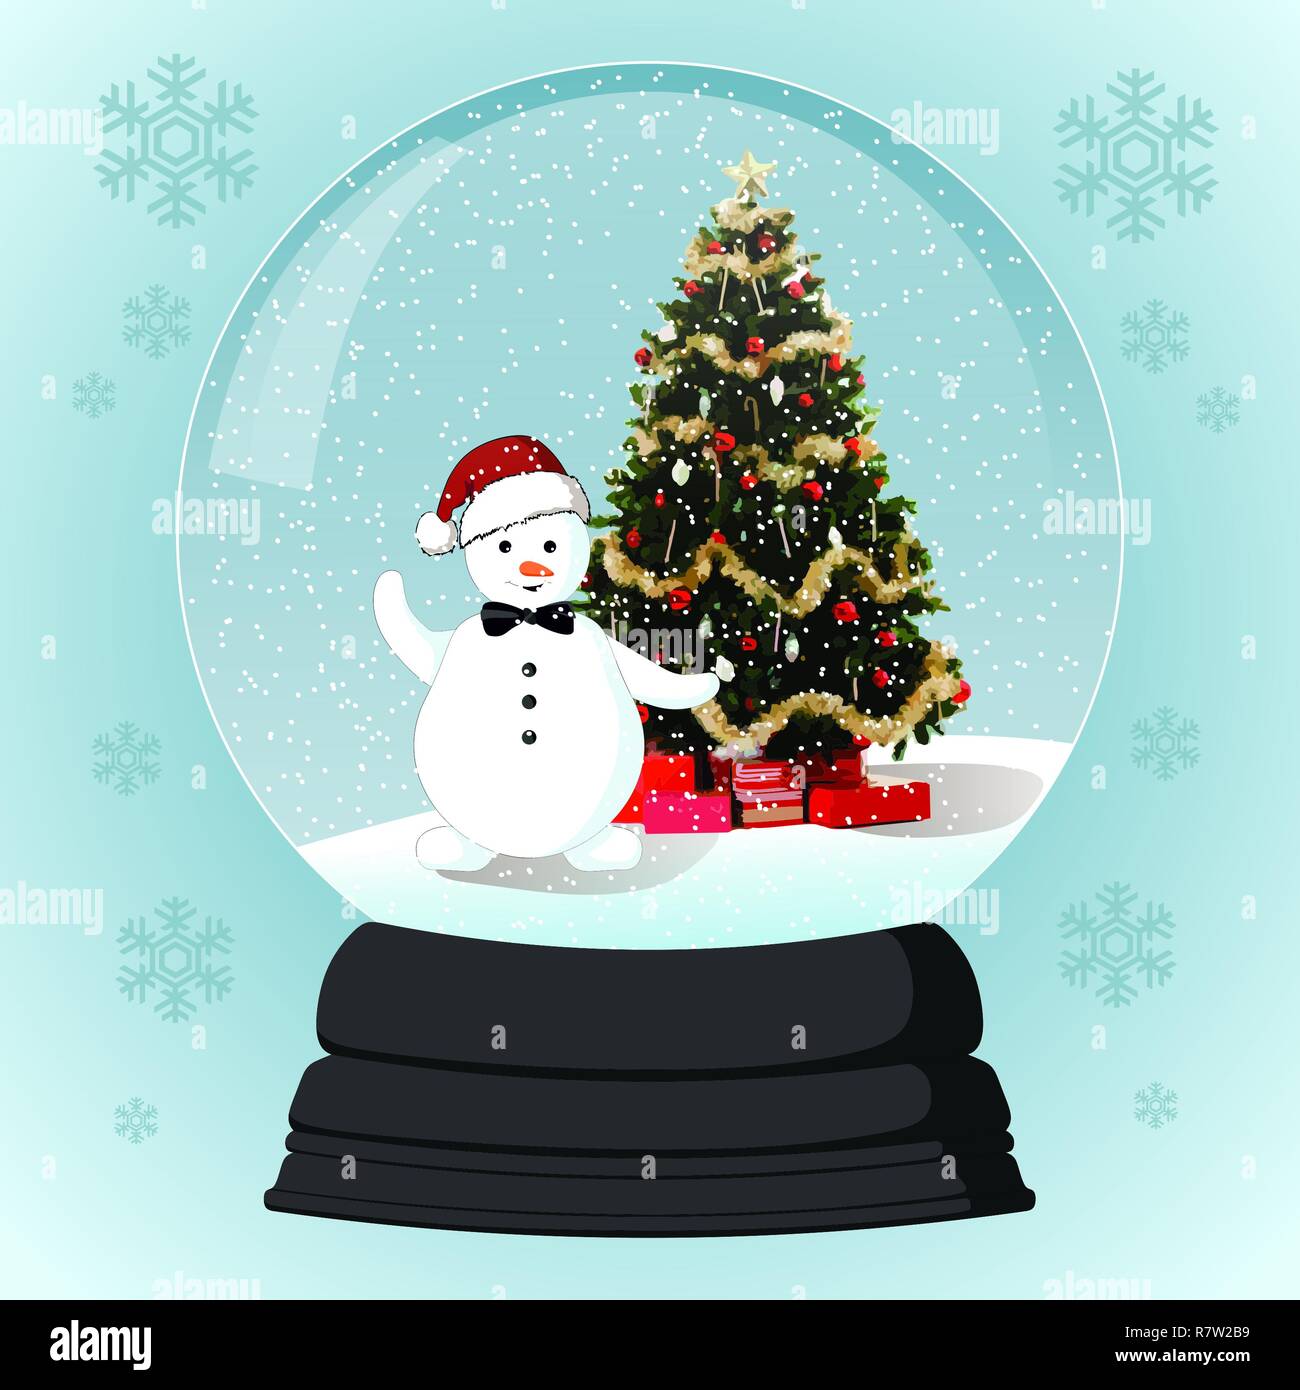 Christmas glass-ball with snowman and Christmas tree Stock Photo